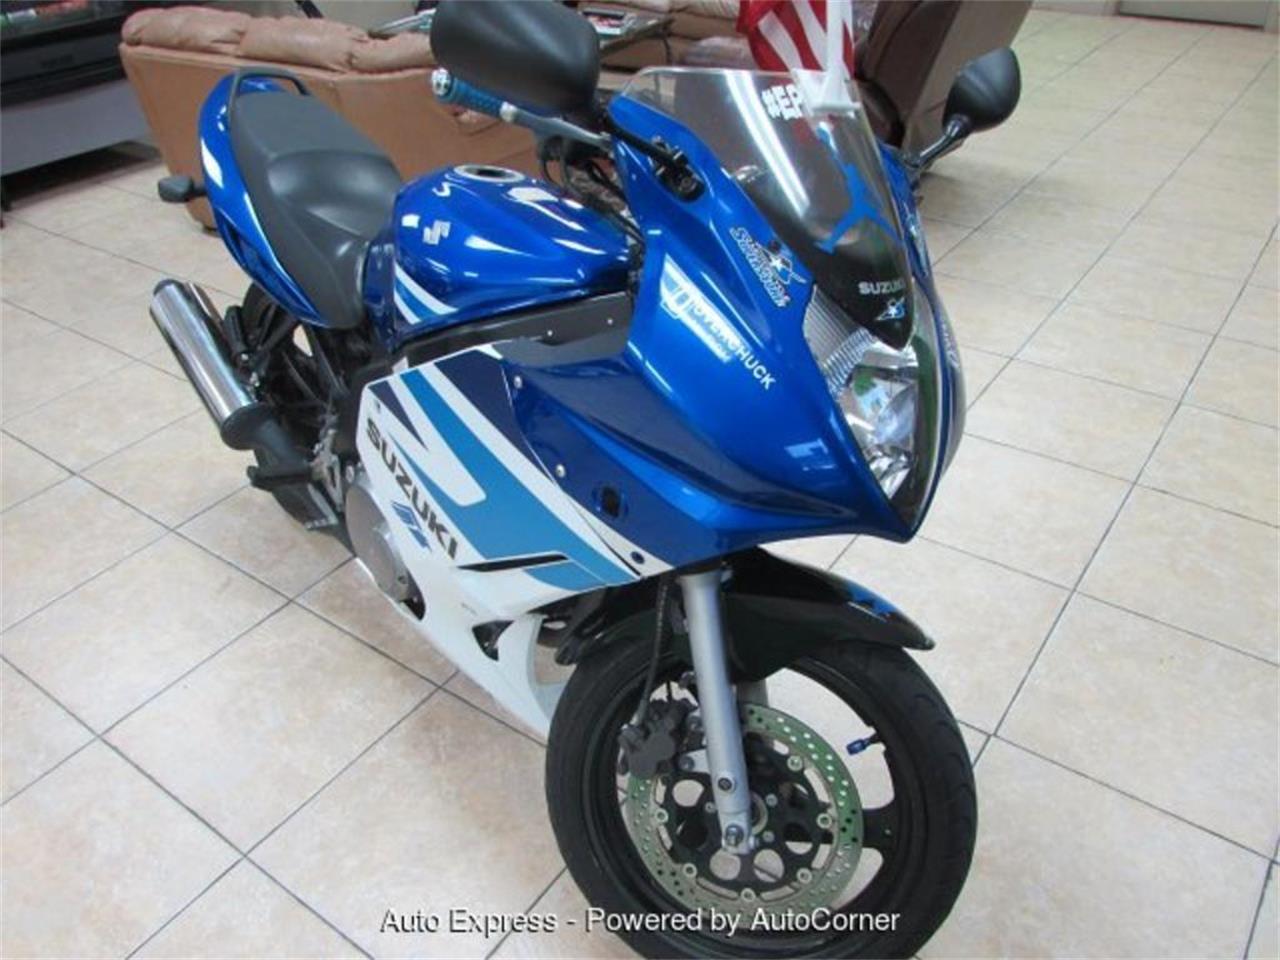 2005 Suzuki Motorcycle for sale in Orlando, FL